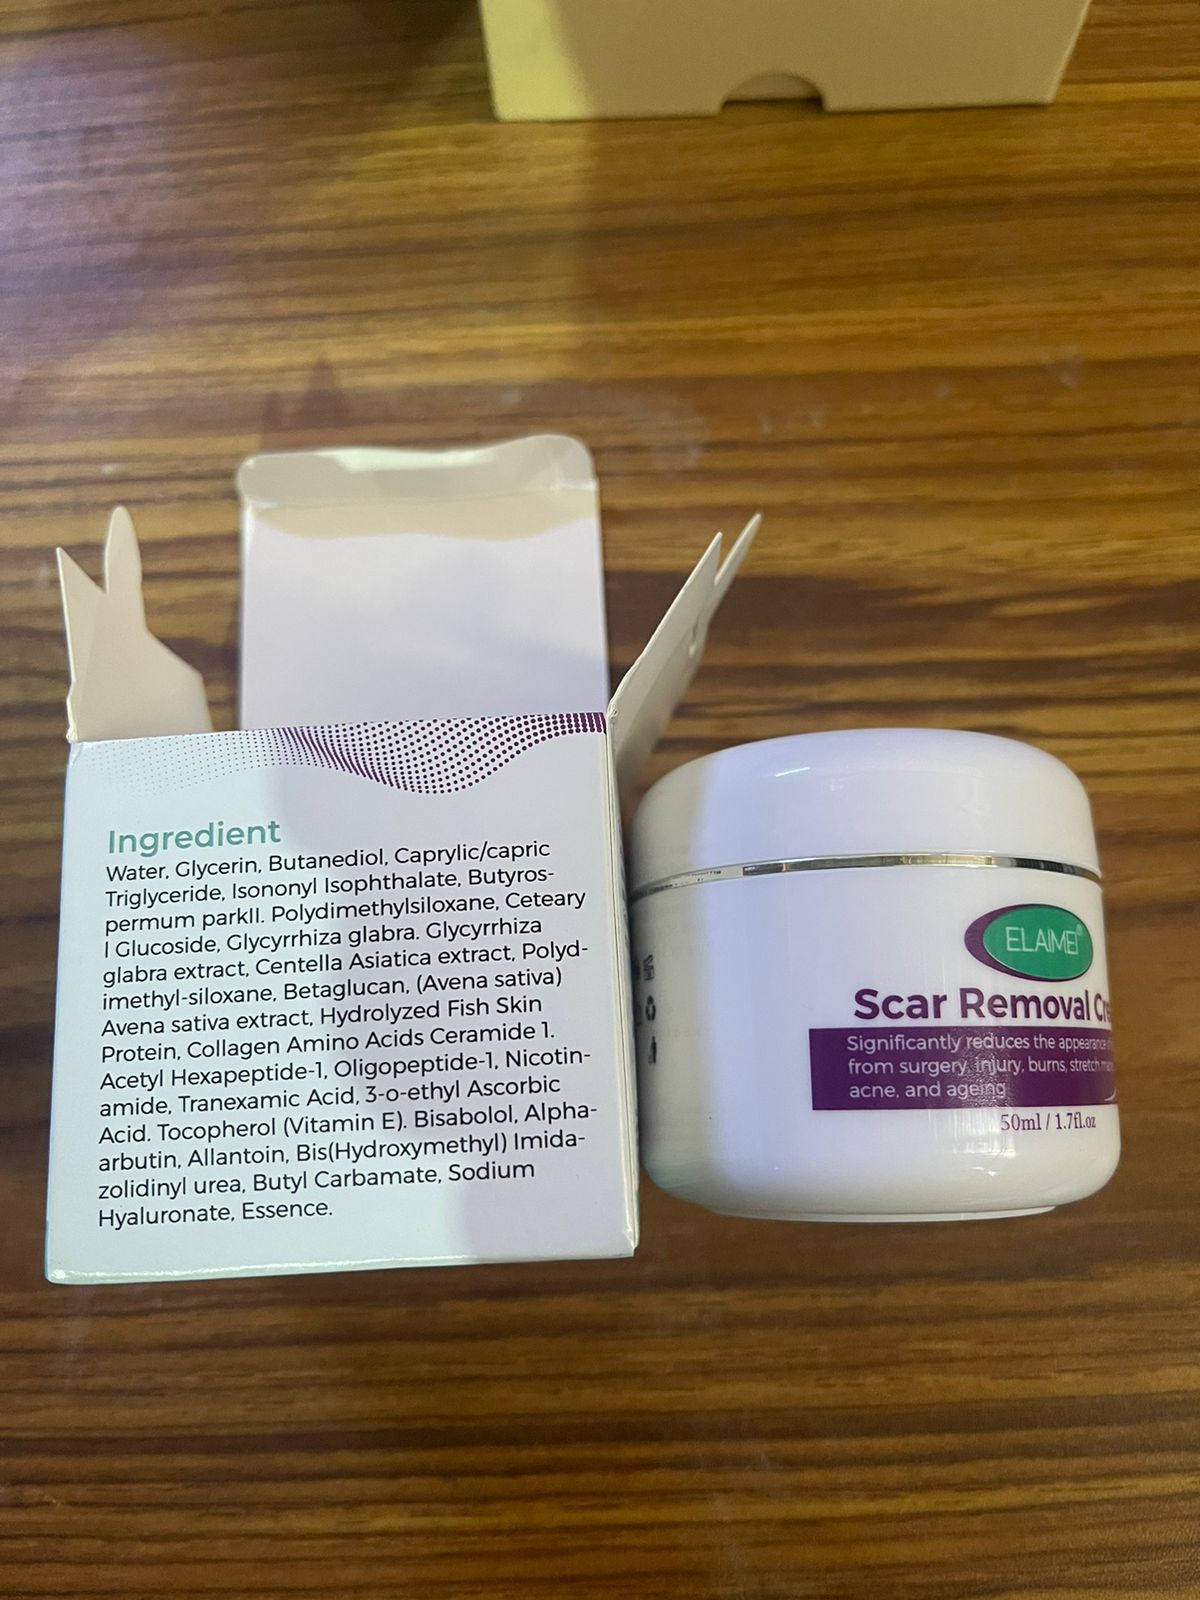 Magic scar removal cream